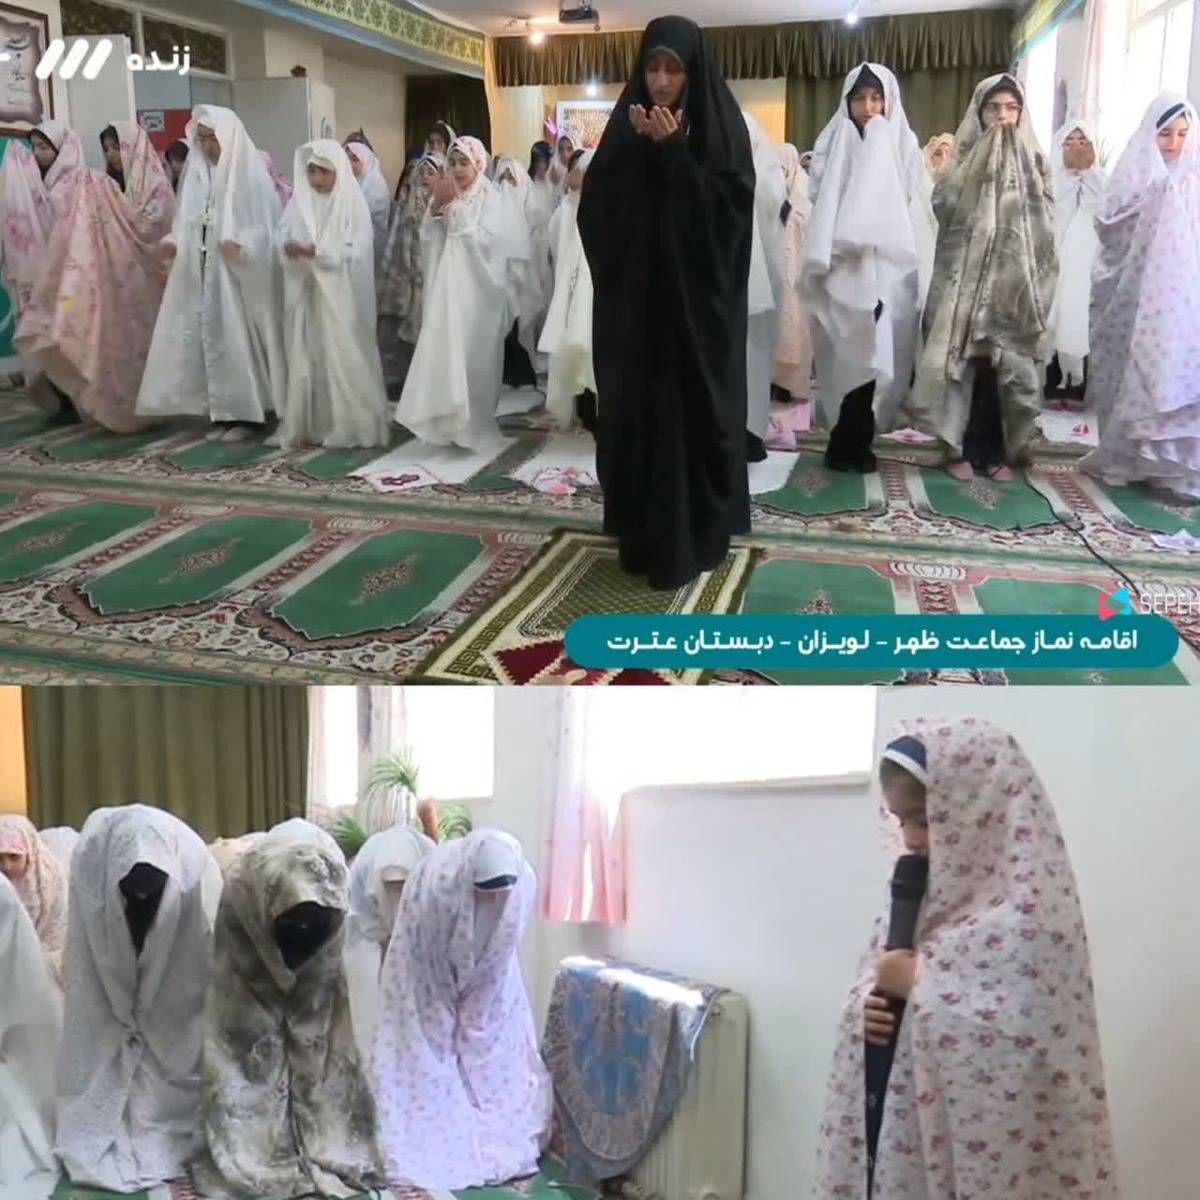 تصاویر اقامه نماز جماعت به امامت یک زن در شبکه ۳ | واکنش مراجع به امامت زنان در نماز